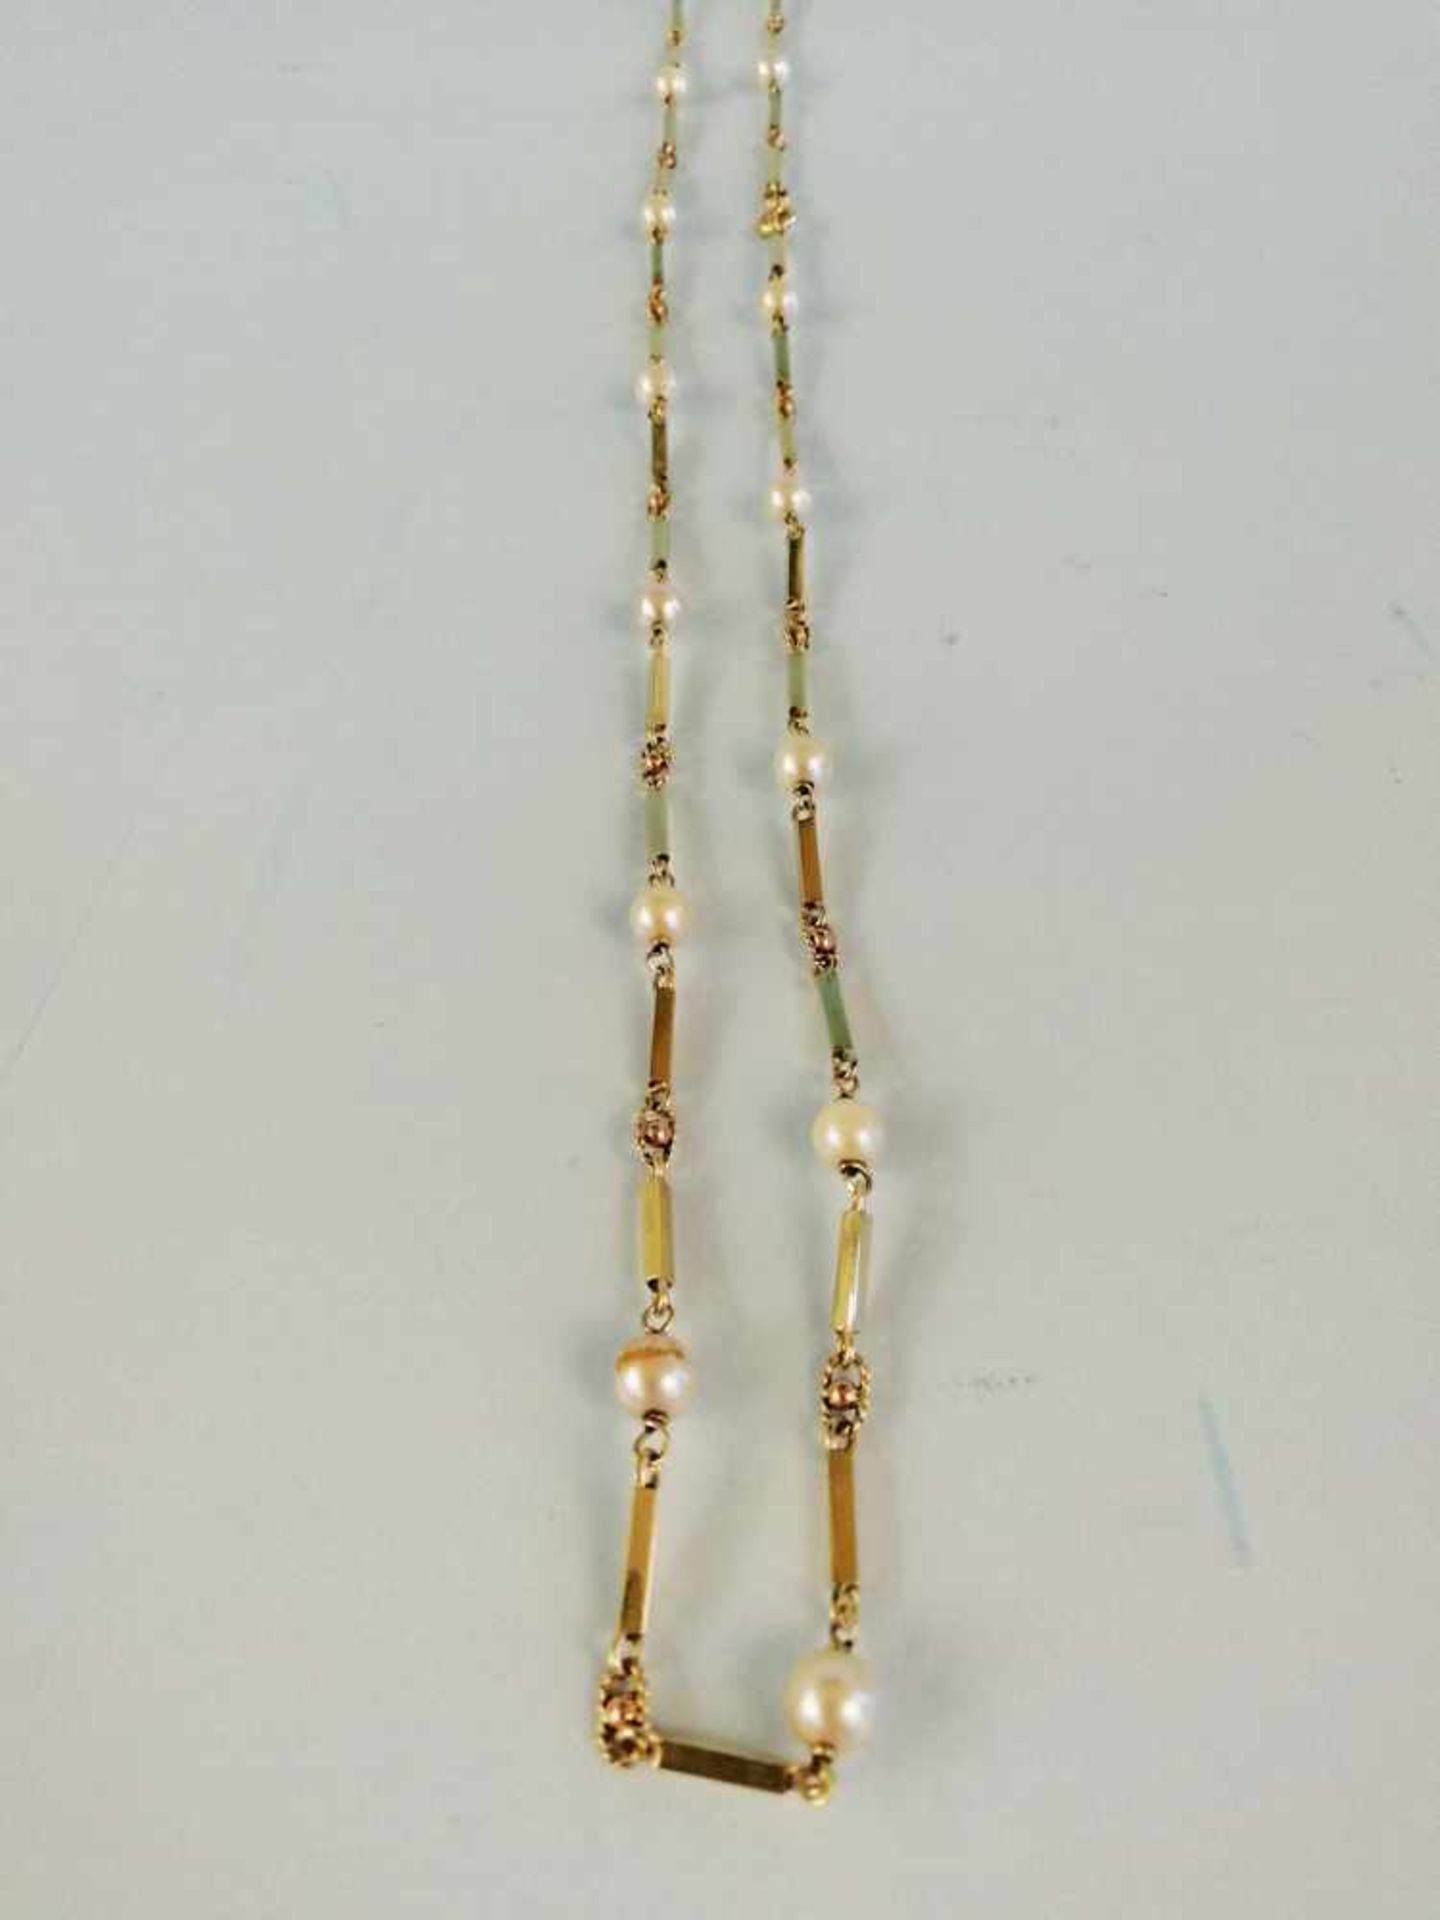 HalsketteGold 585, Süßwasserkulturperlen, Länge 80cm, 21,5g;